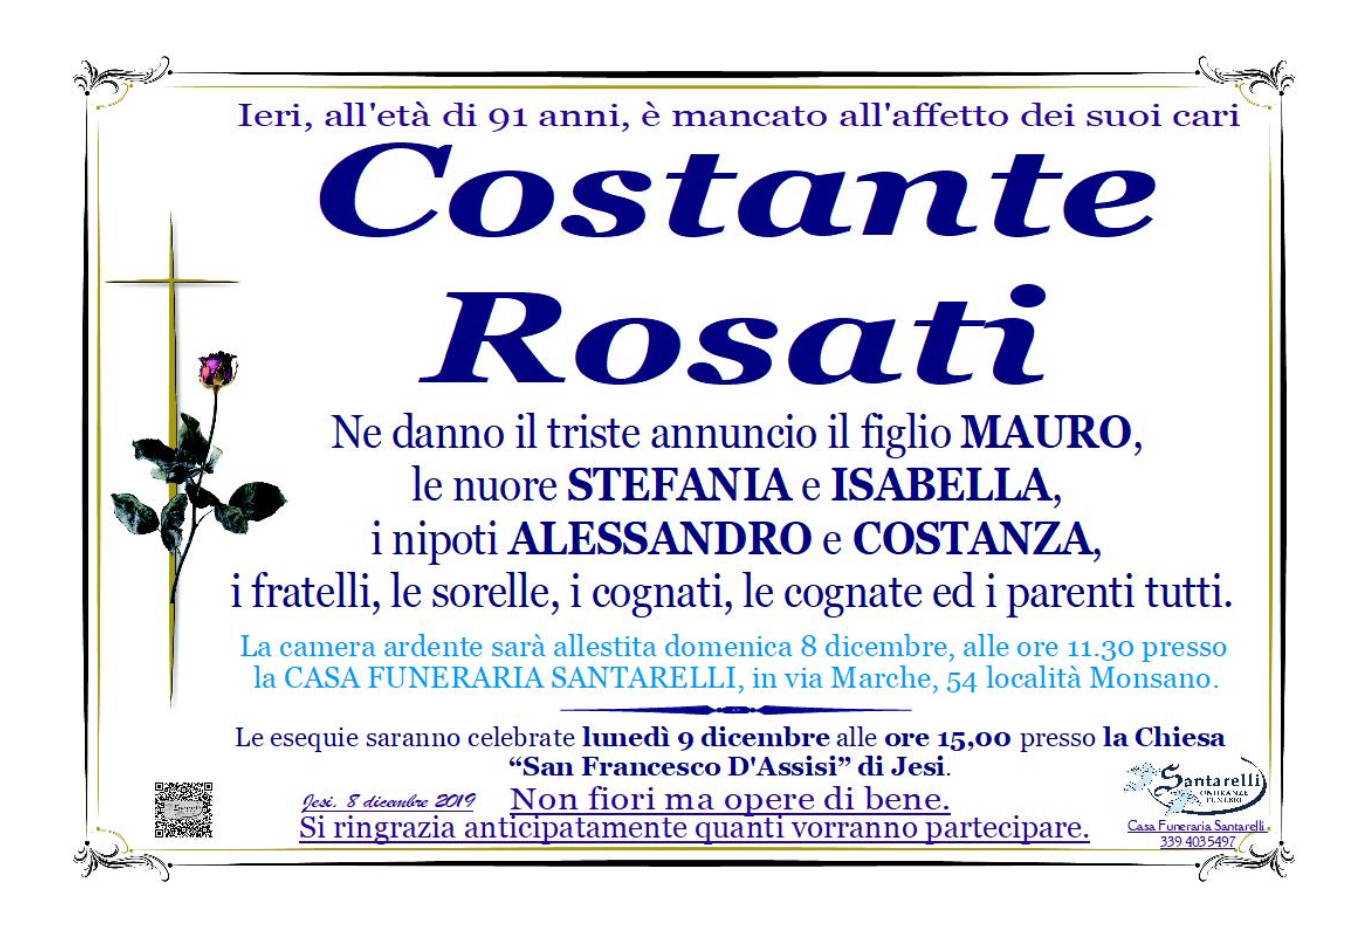 Costente Rosati